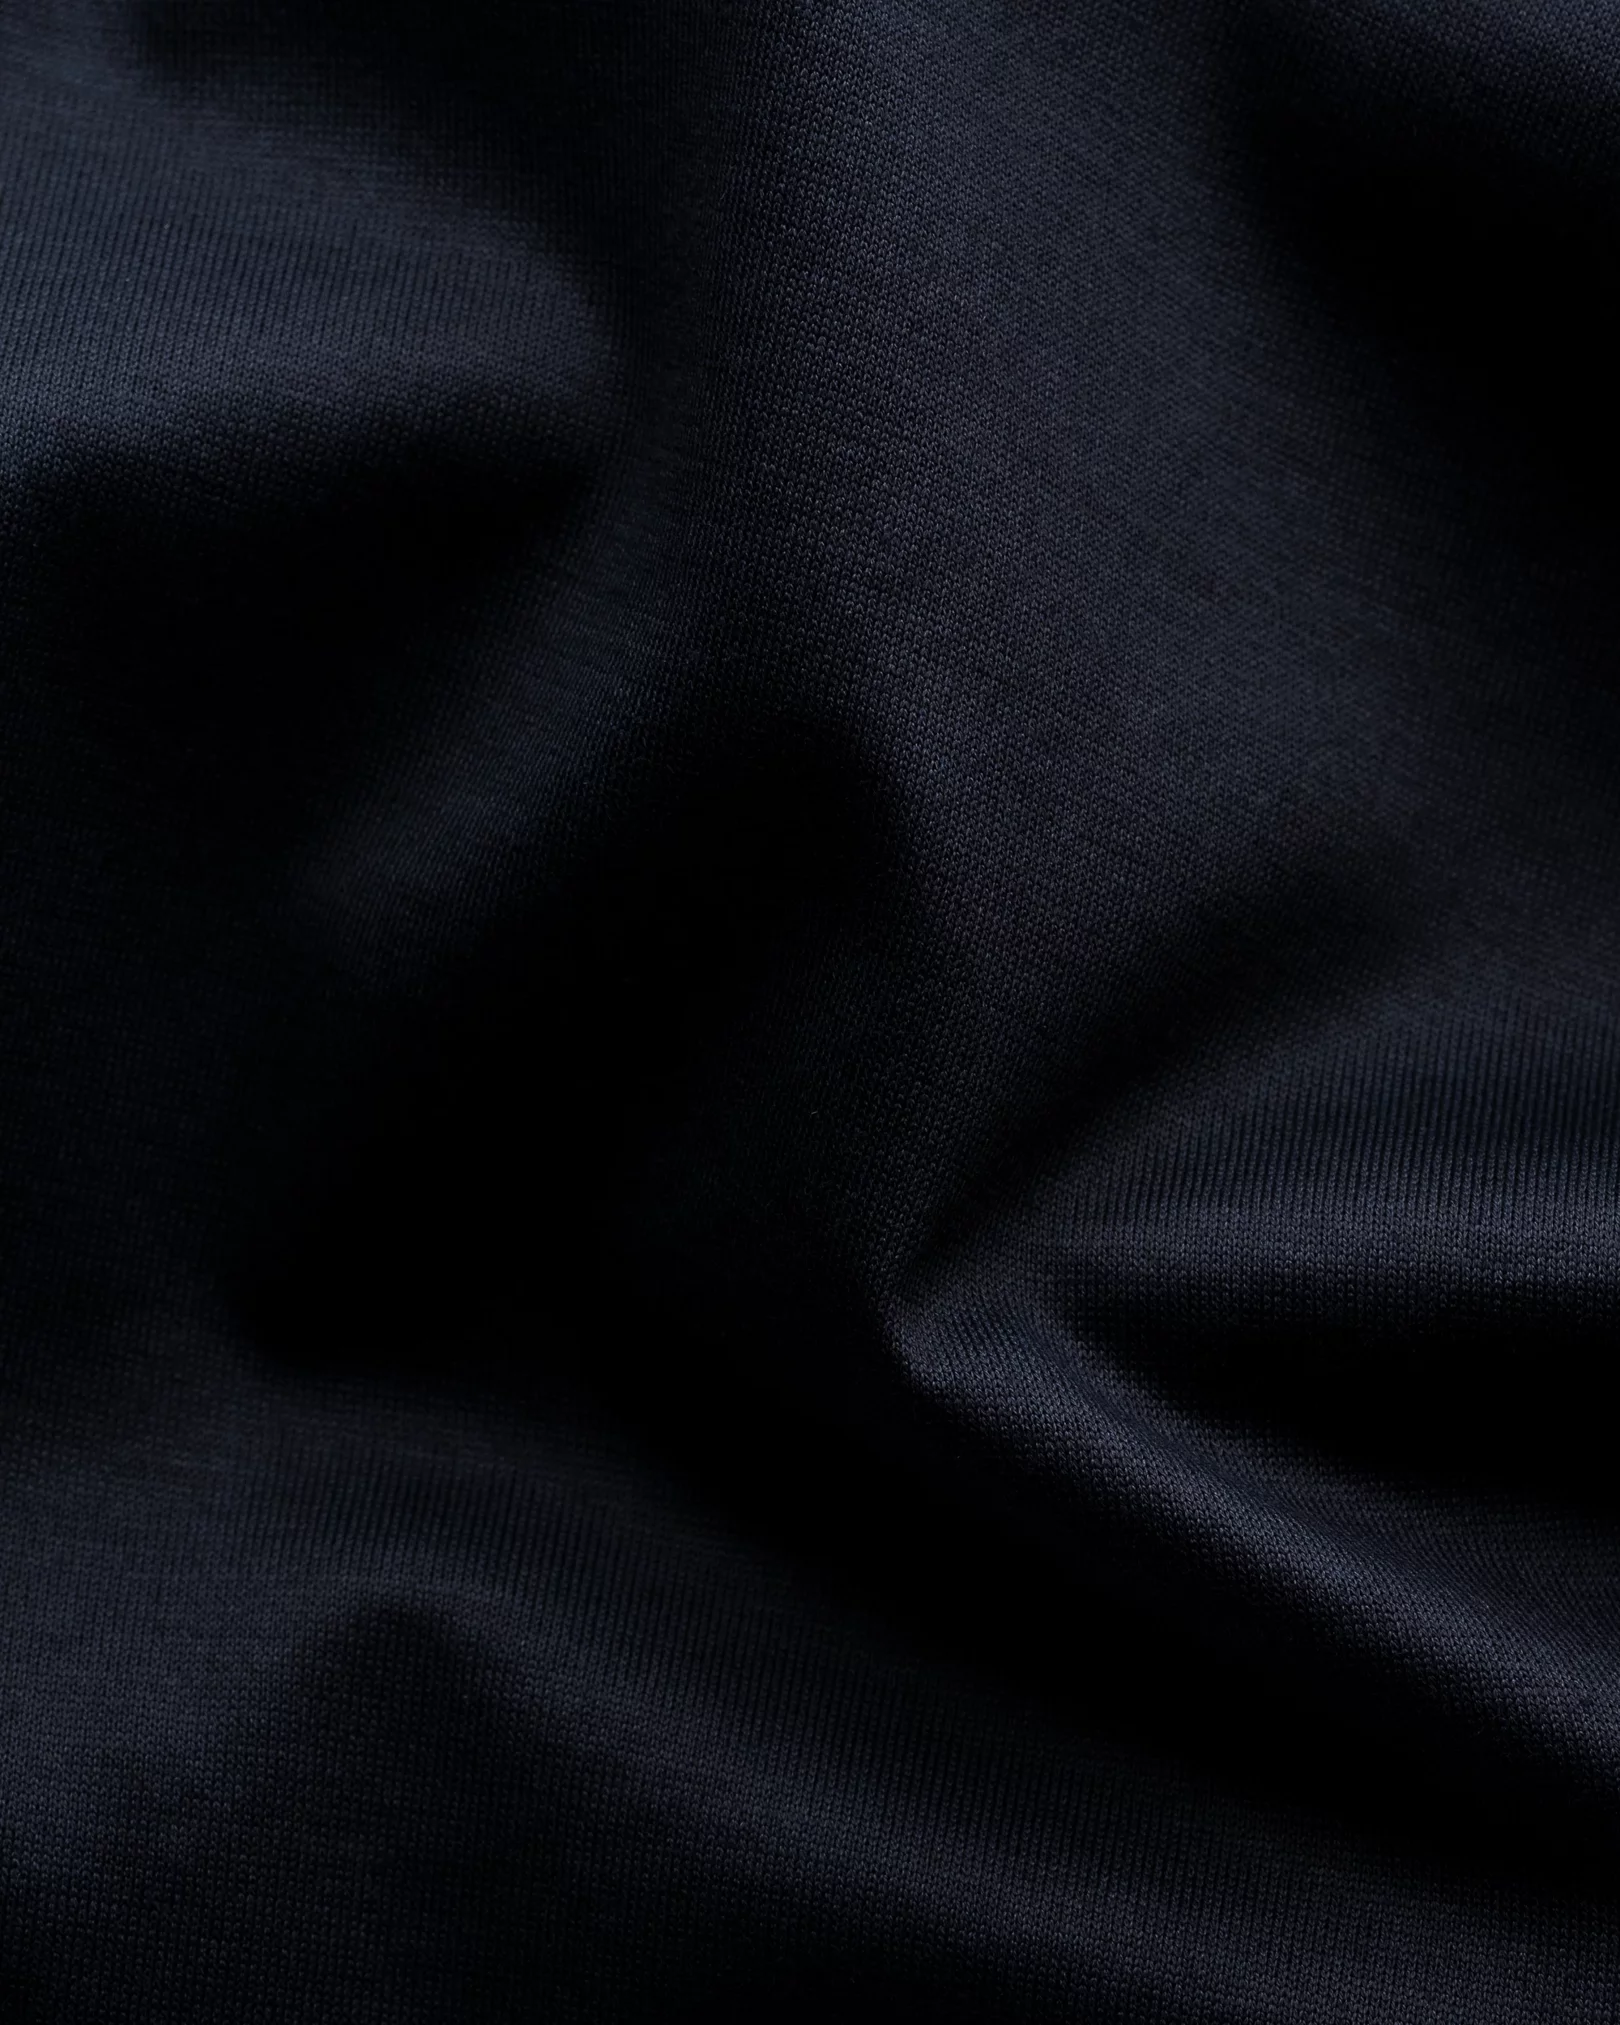 Eton - navy blue single jersey